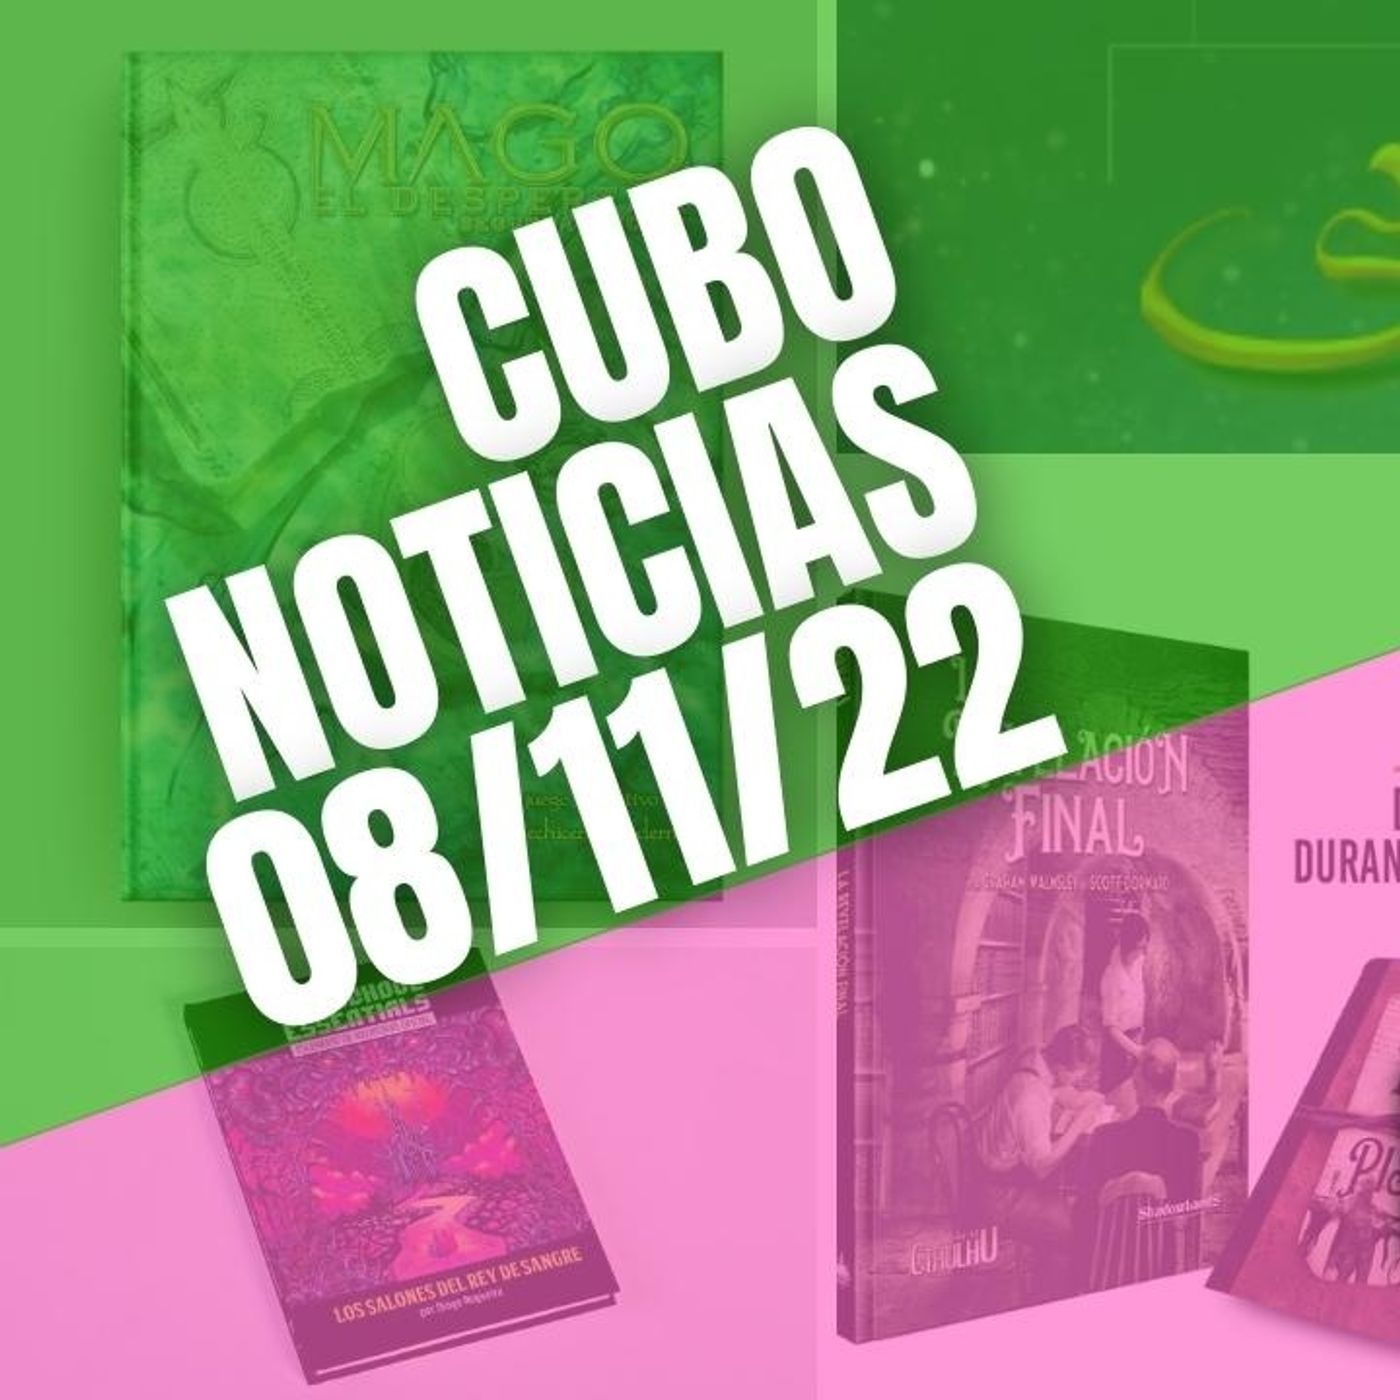 #CuboNoticias 08/11/22